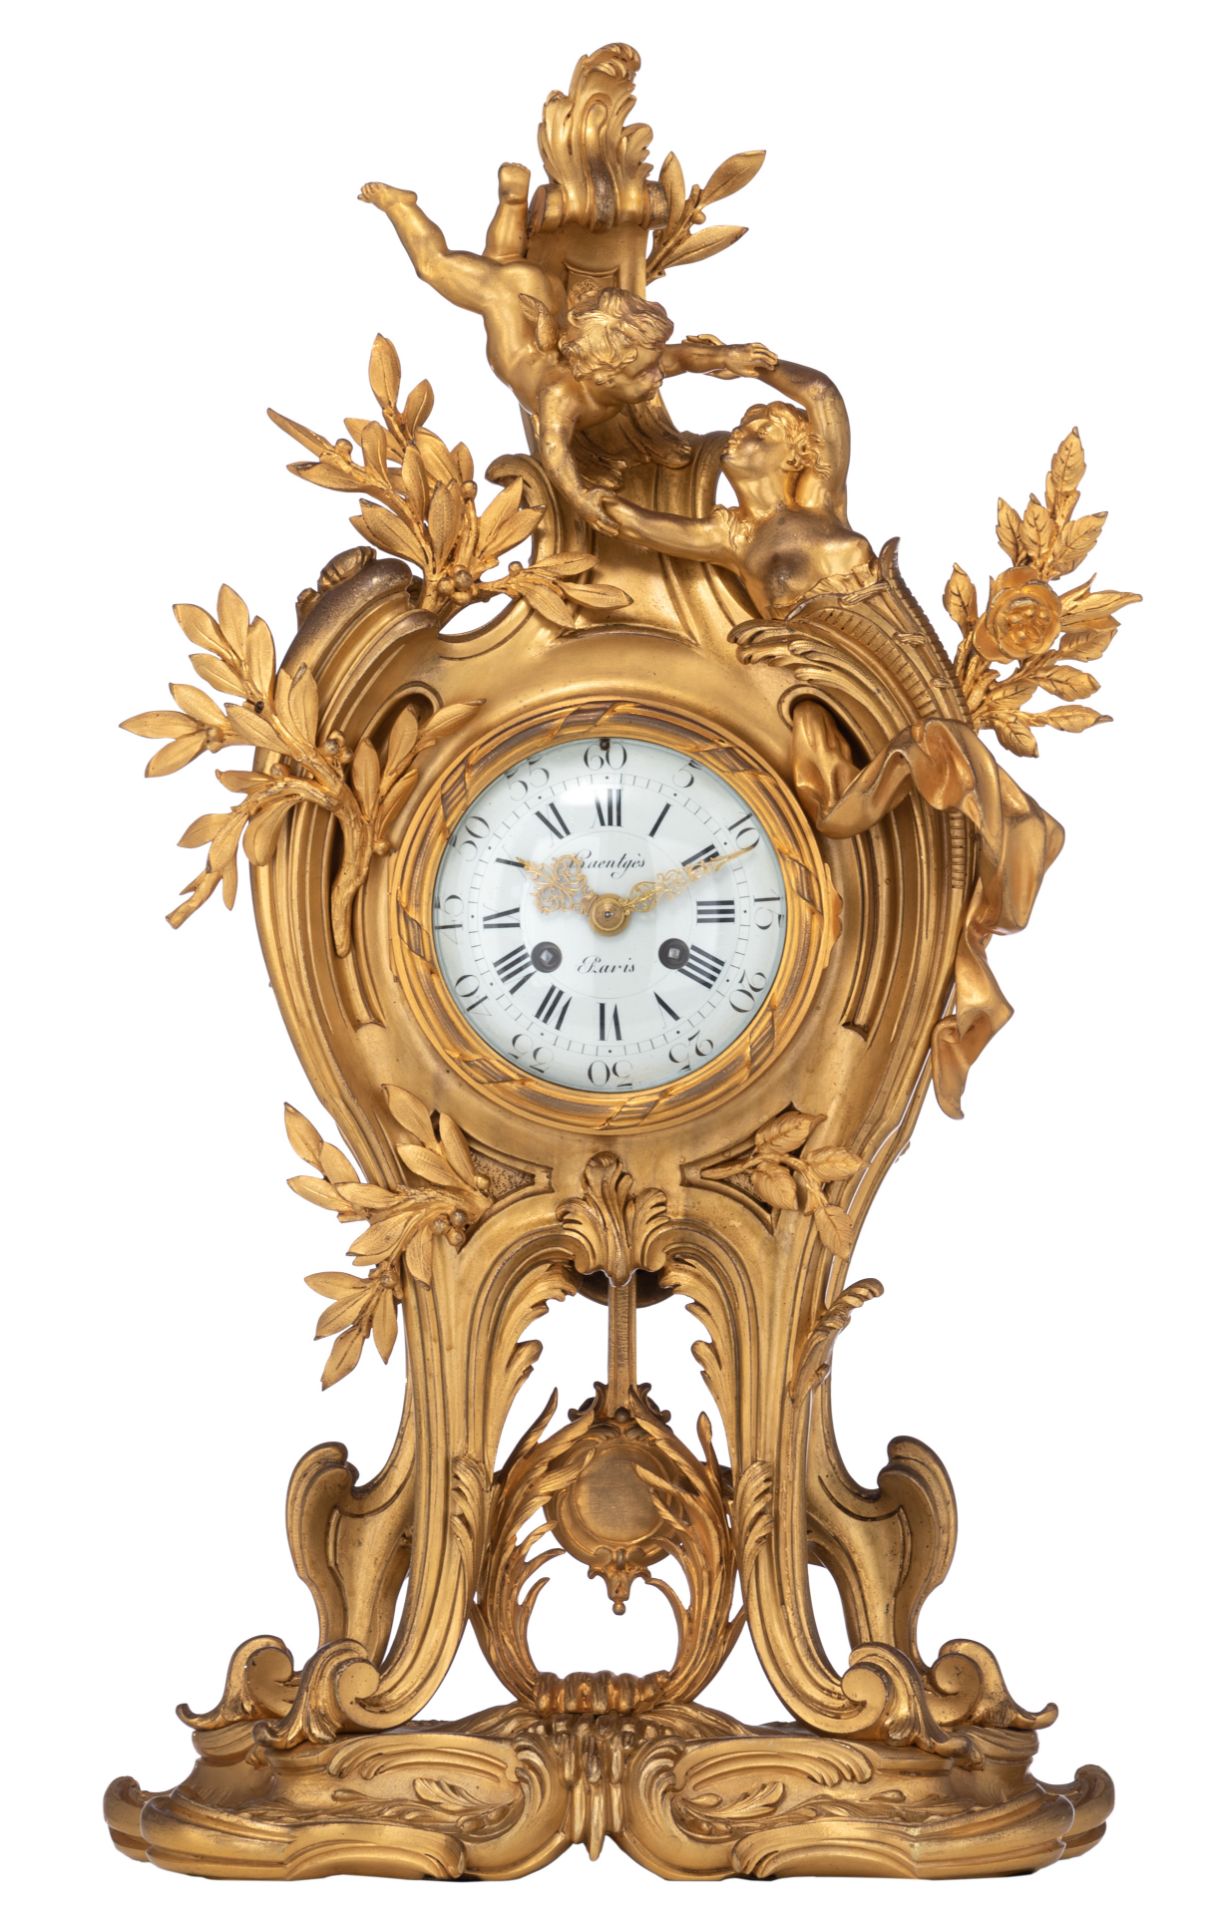 A fine Rococo style gilt bronze cartel clock, H 61 cm